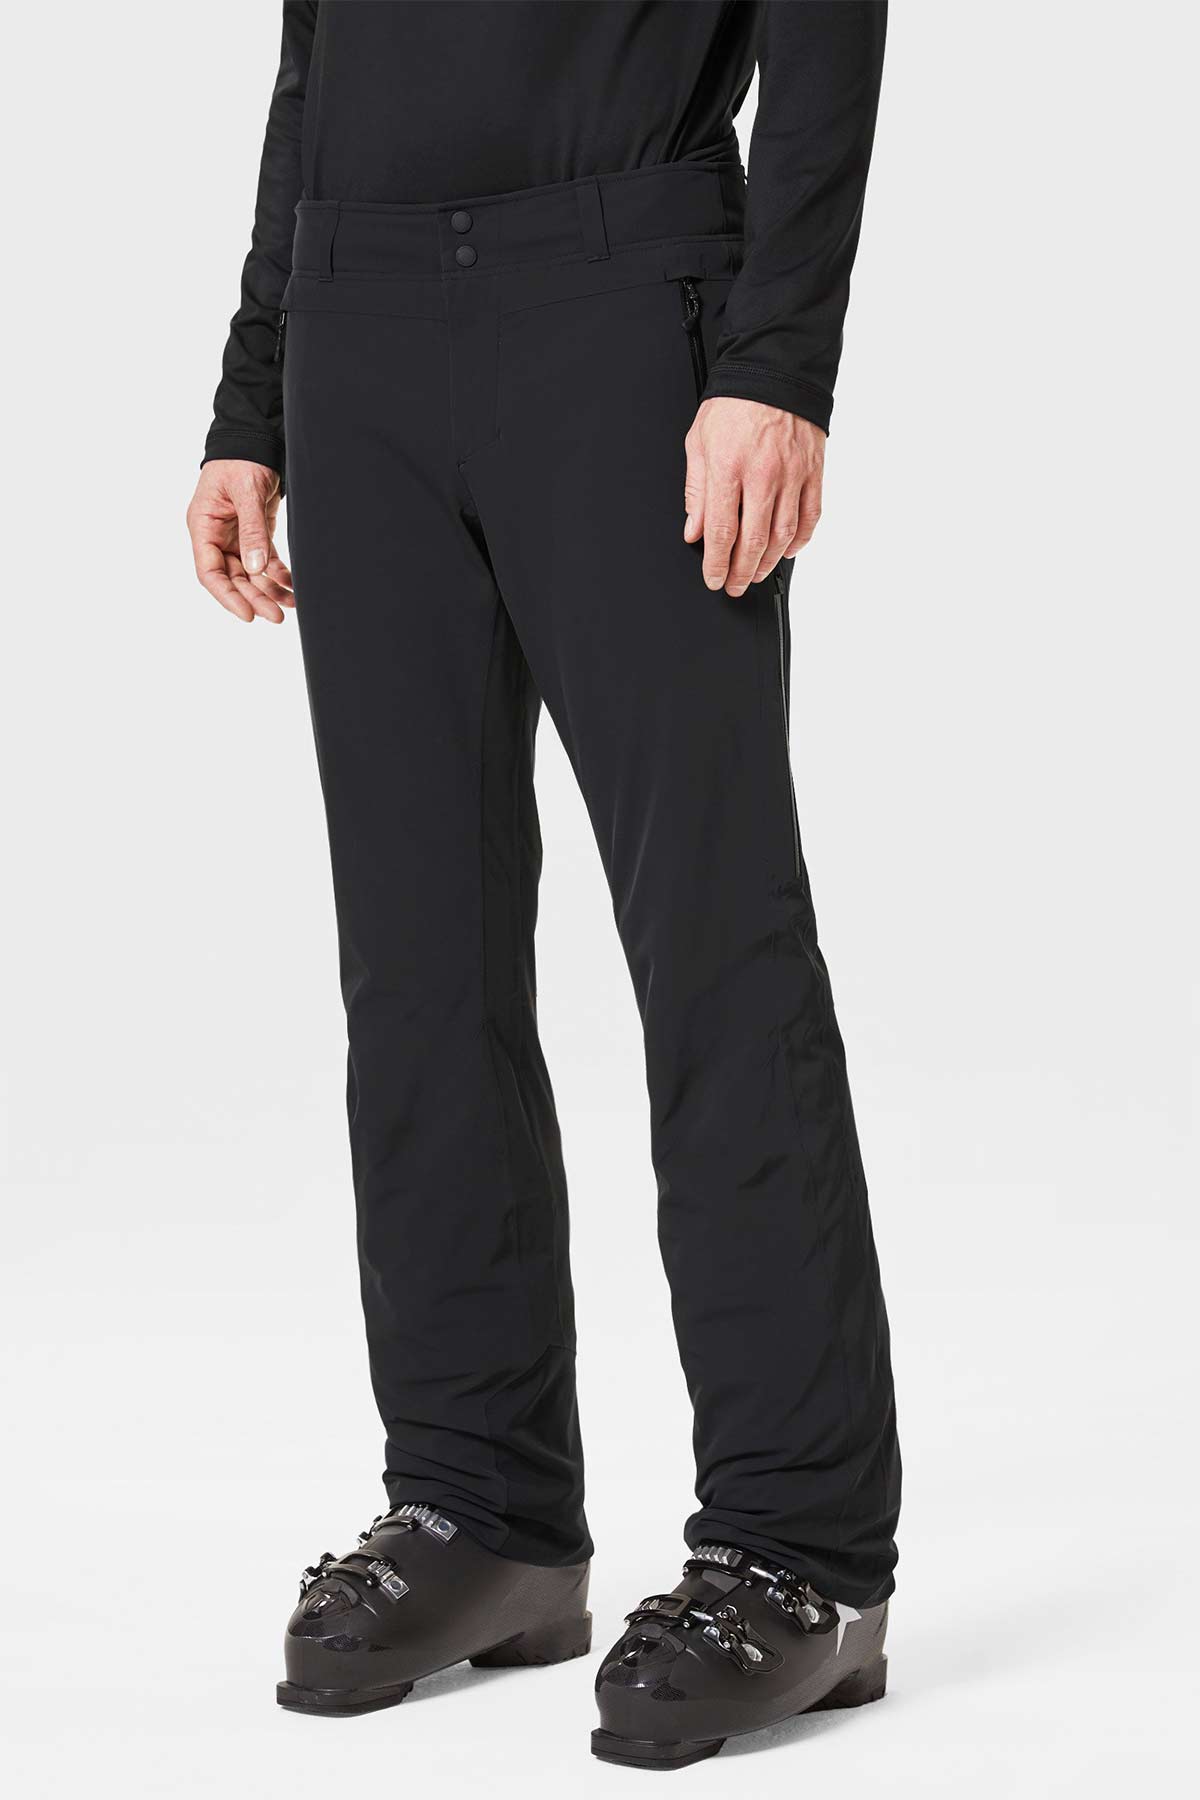 Bogner Neal Yastıklı Bel Destekli Kayak Pantolonu-Libas Trendy Fashion Store